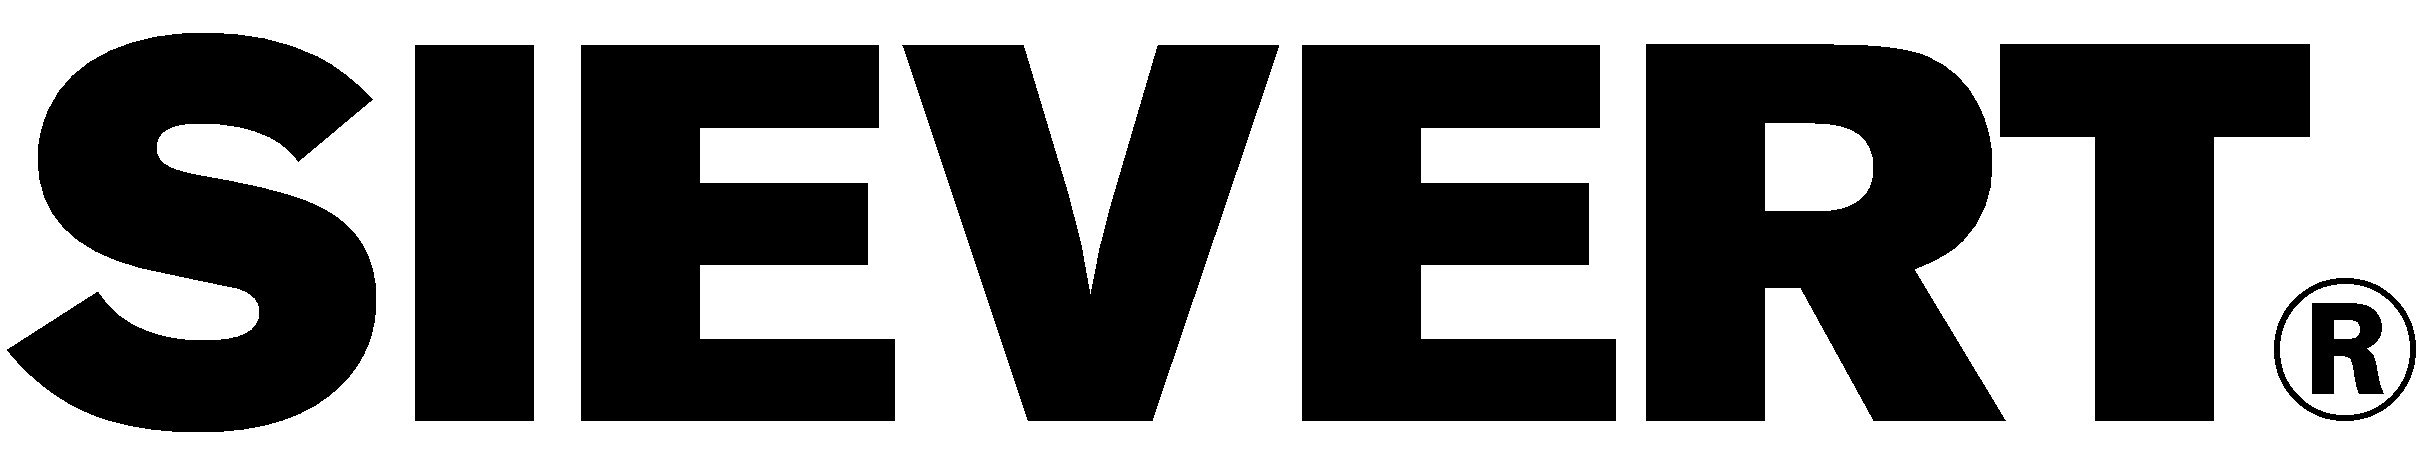 sievert_logo